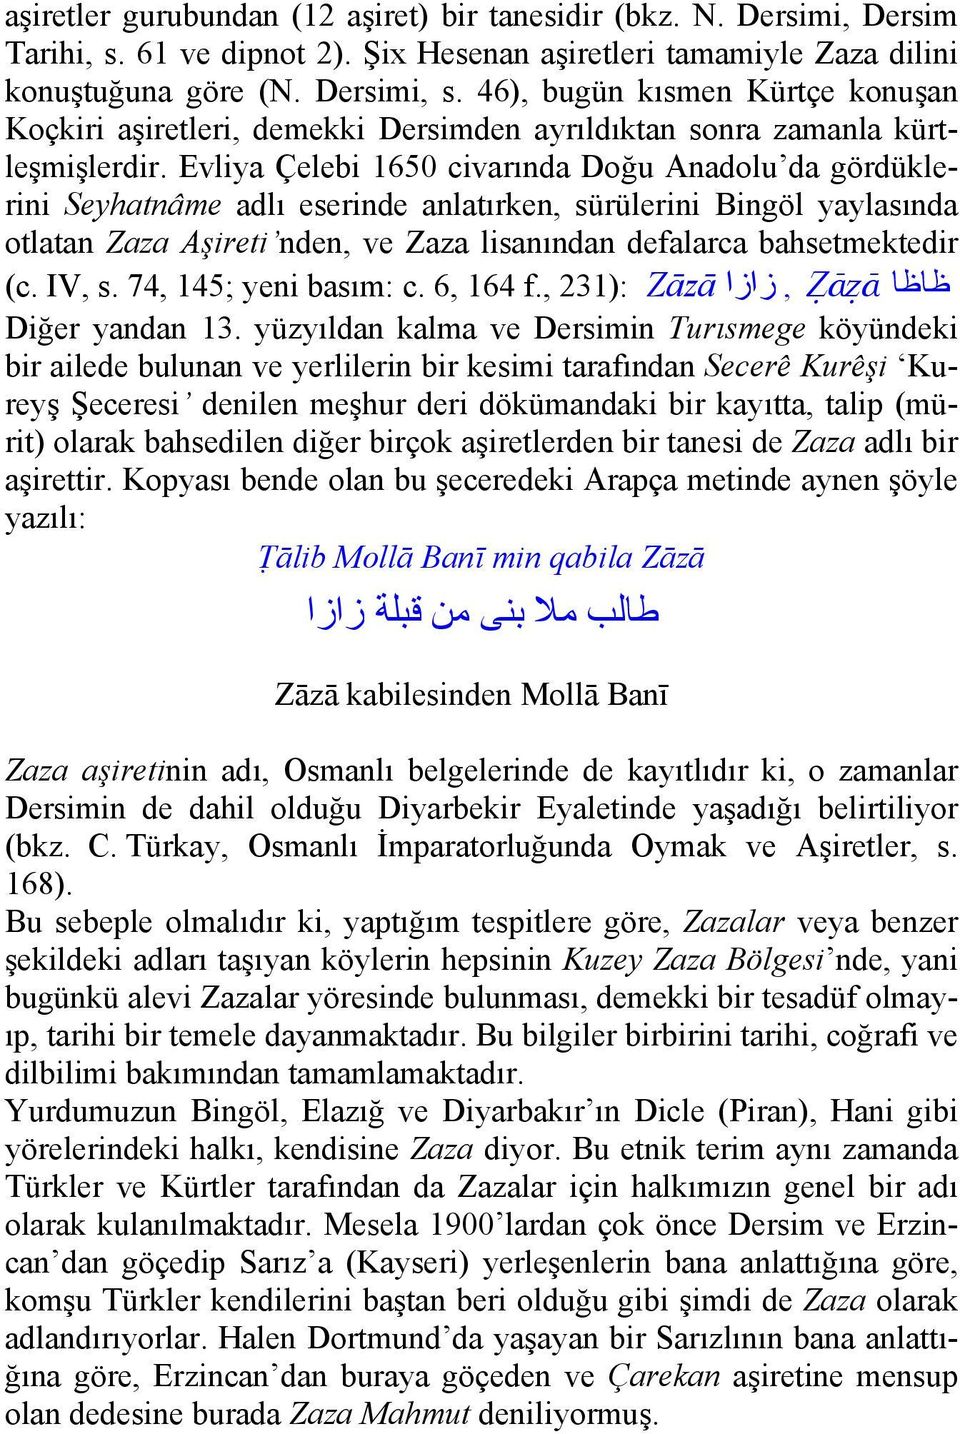 Evliya Çelebi 1650 civarında Doğu Anadolu da gördüklerini Seyhatnâme adlı eserinde anlatırken, sürülerini Bingöl yaylasında otlatan Zaza Aşireti nden, ve Zaza lisanından defalarca bahsetmektedir